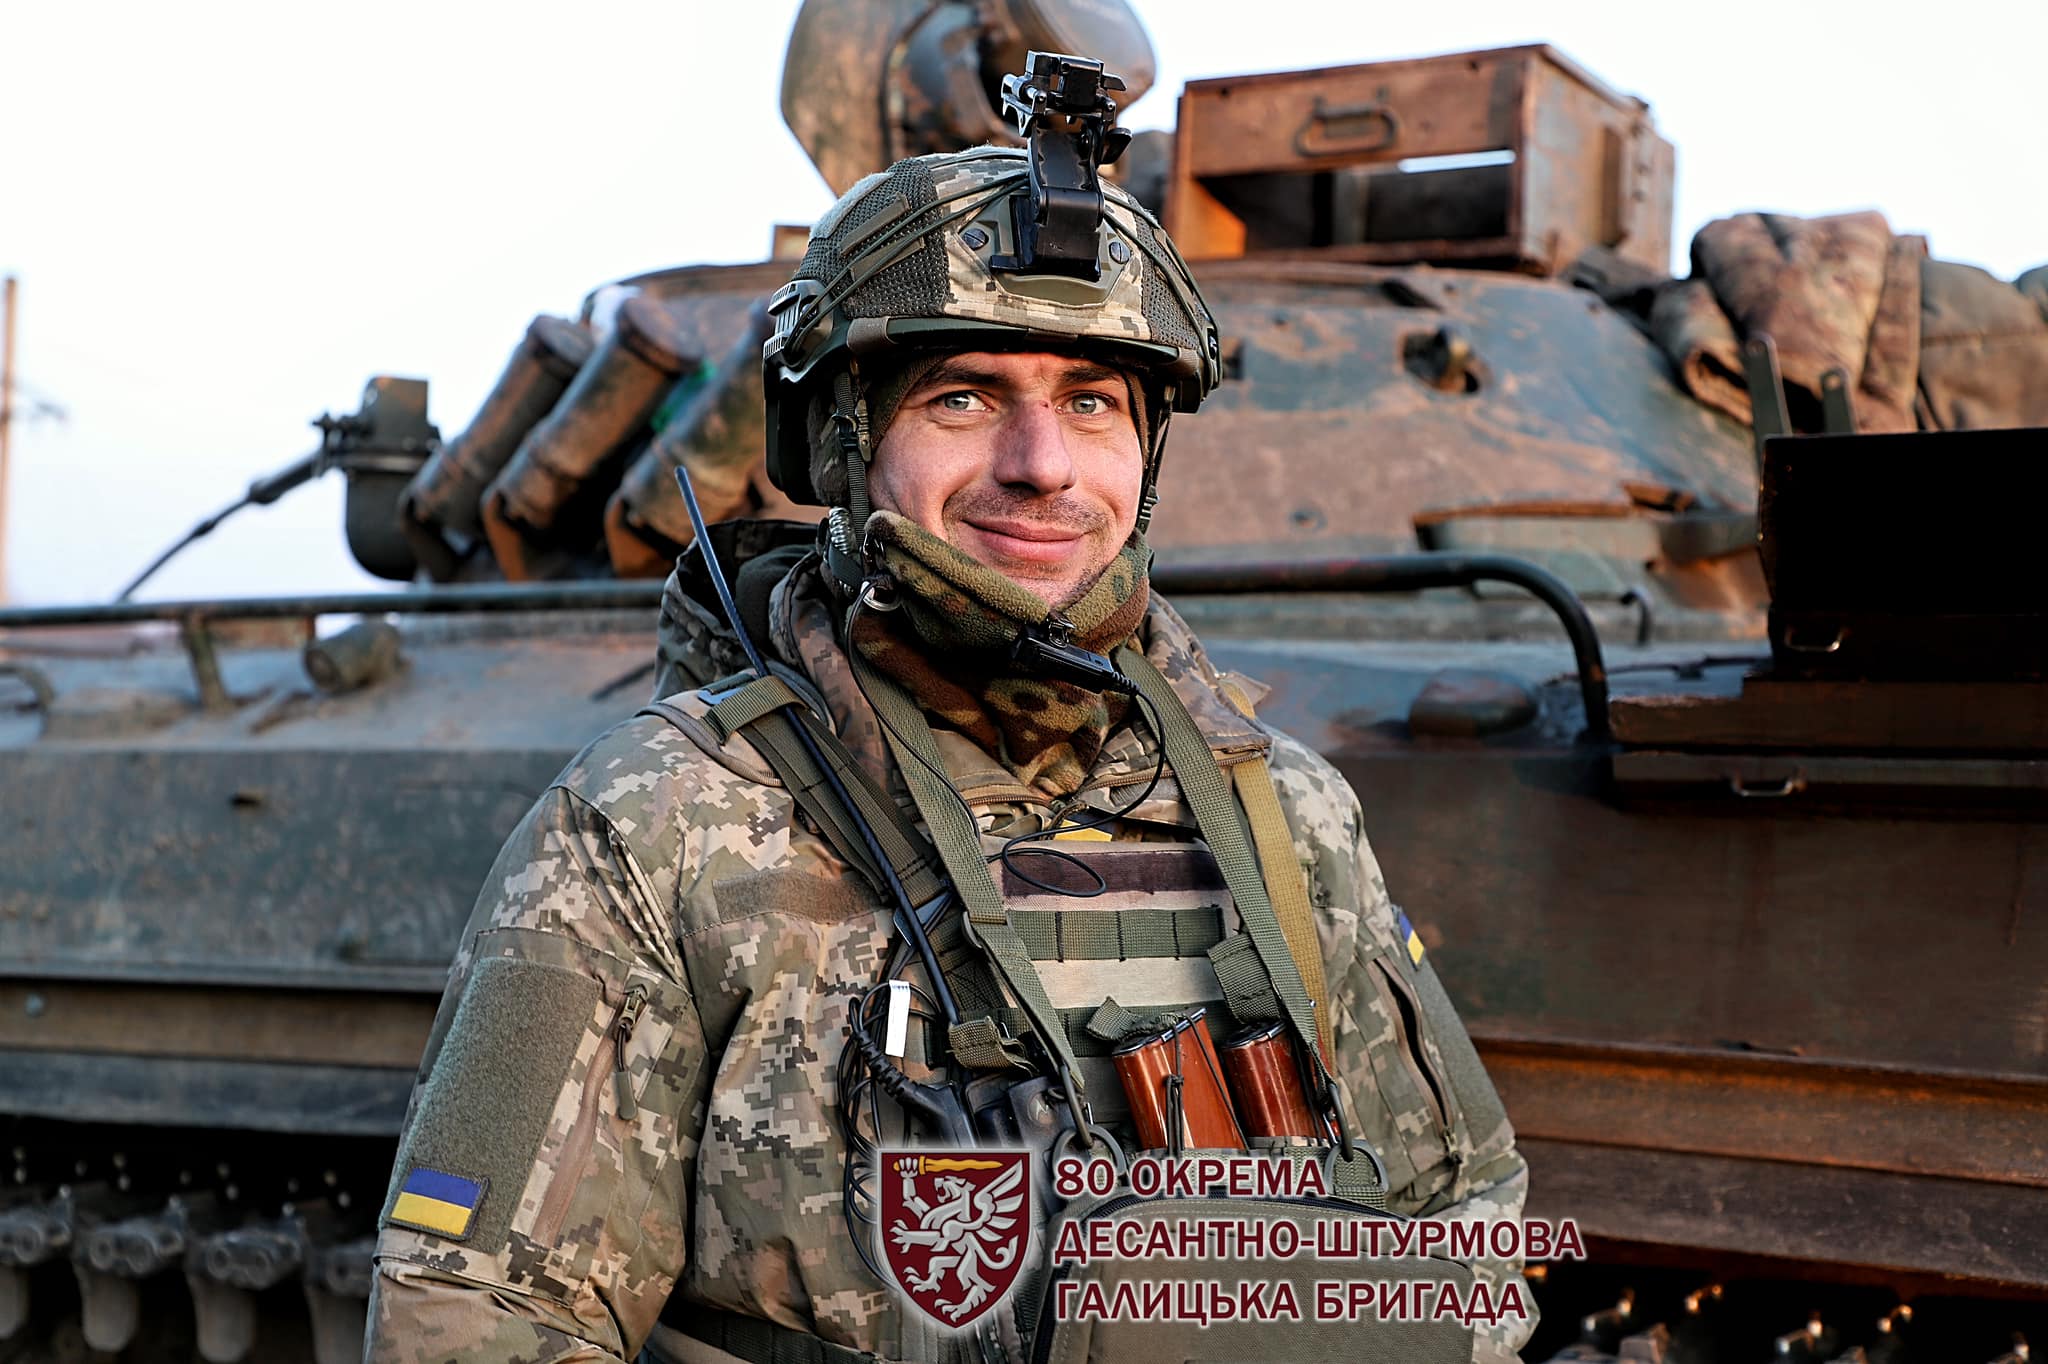 صور الجيش الاوكراني في الحرب الروسية-الاوكرانية.........متجدد GJ-XWIGWYAAmYlZ?format=jpg&name=large